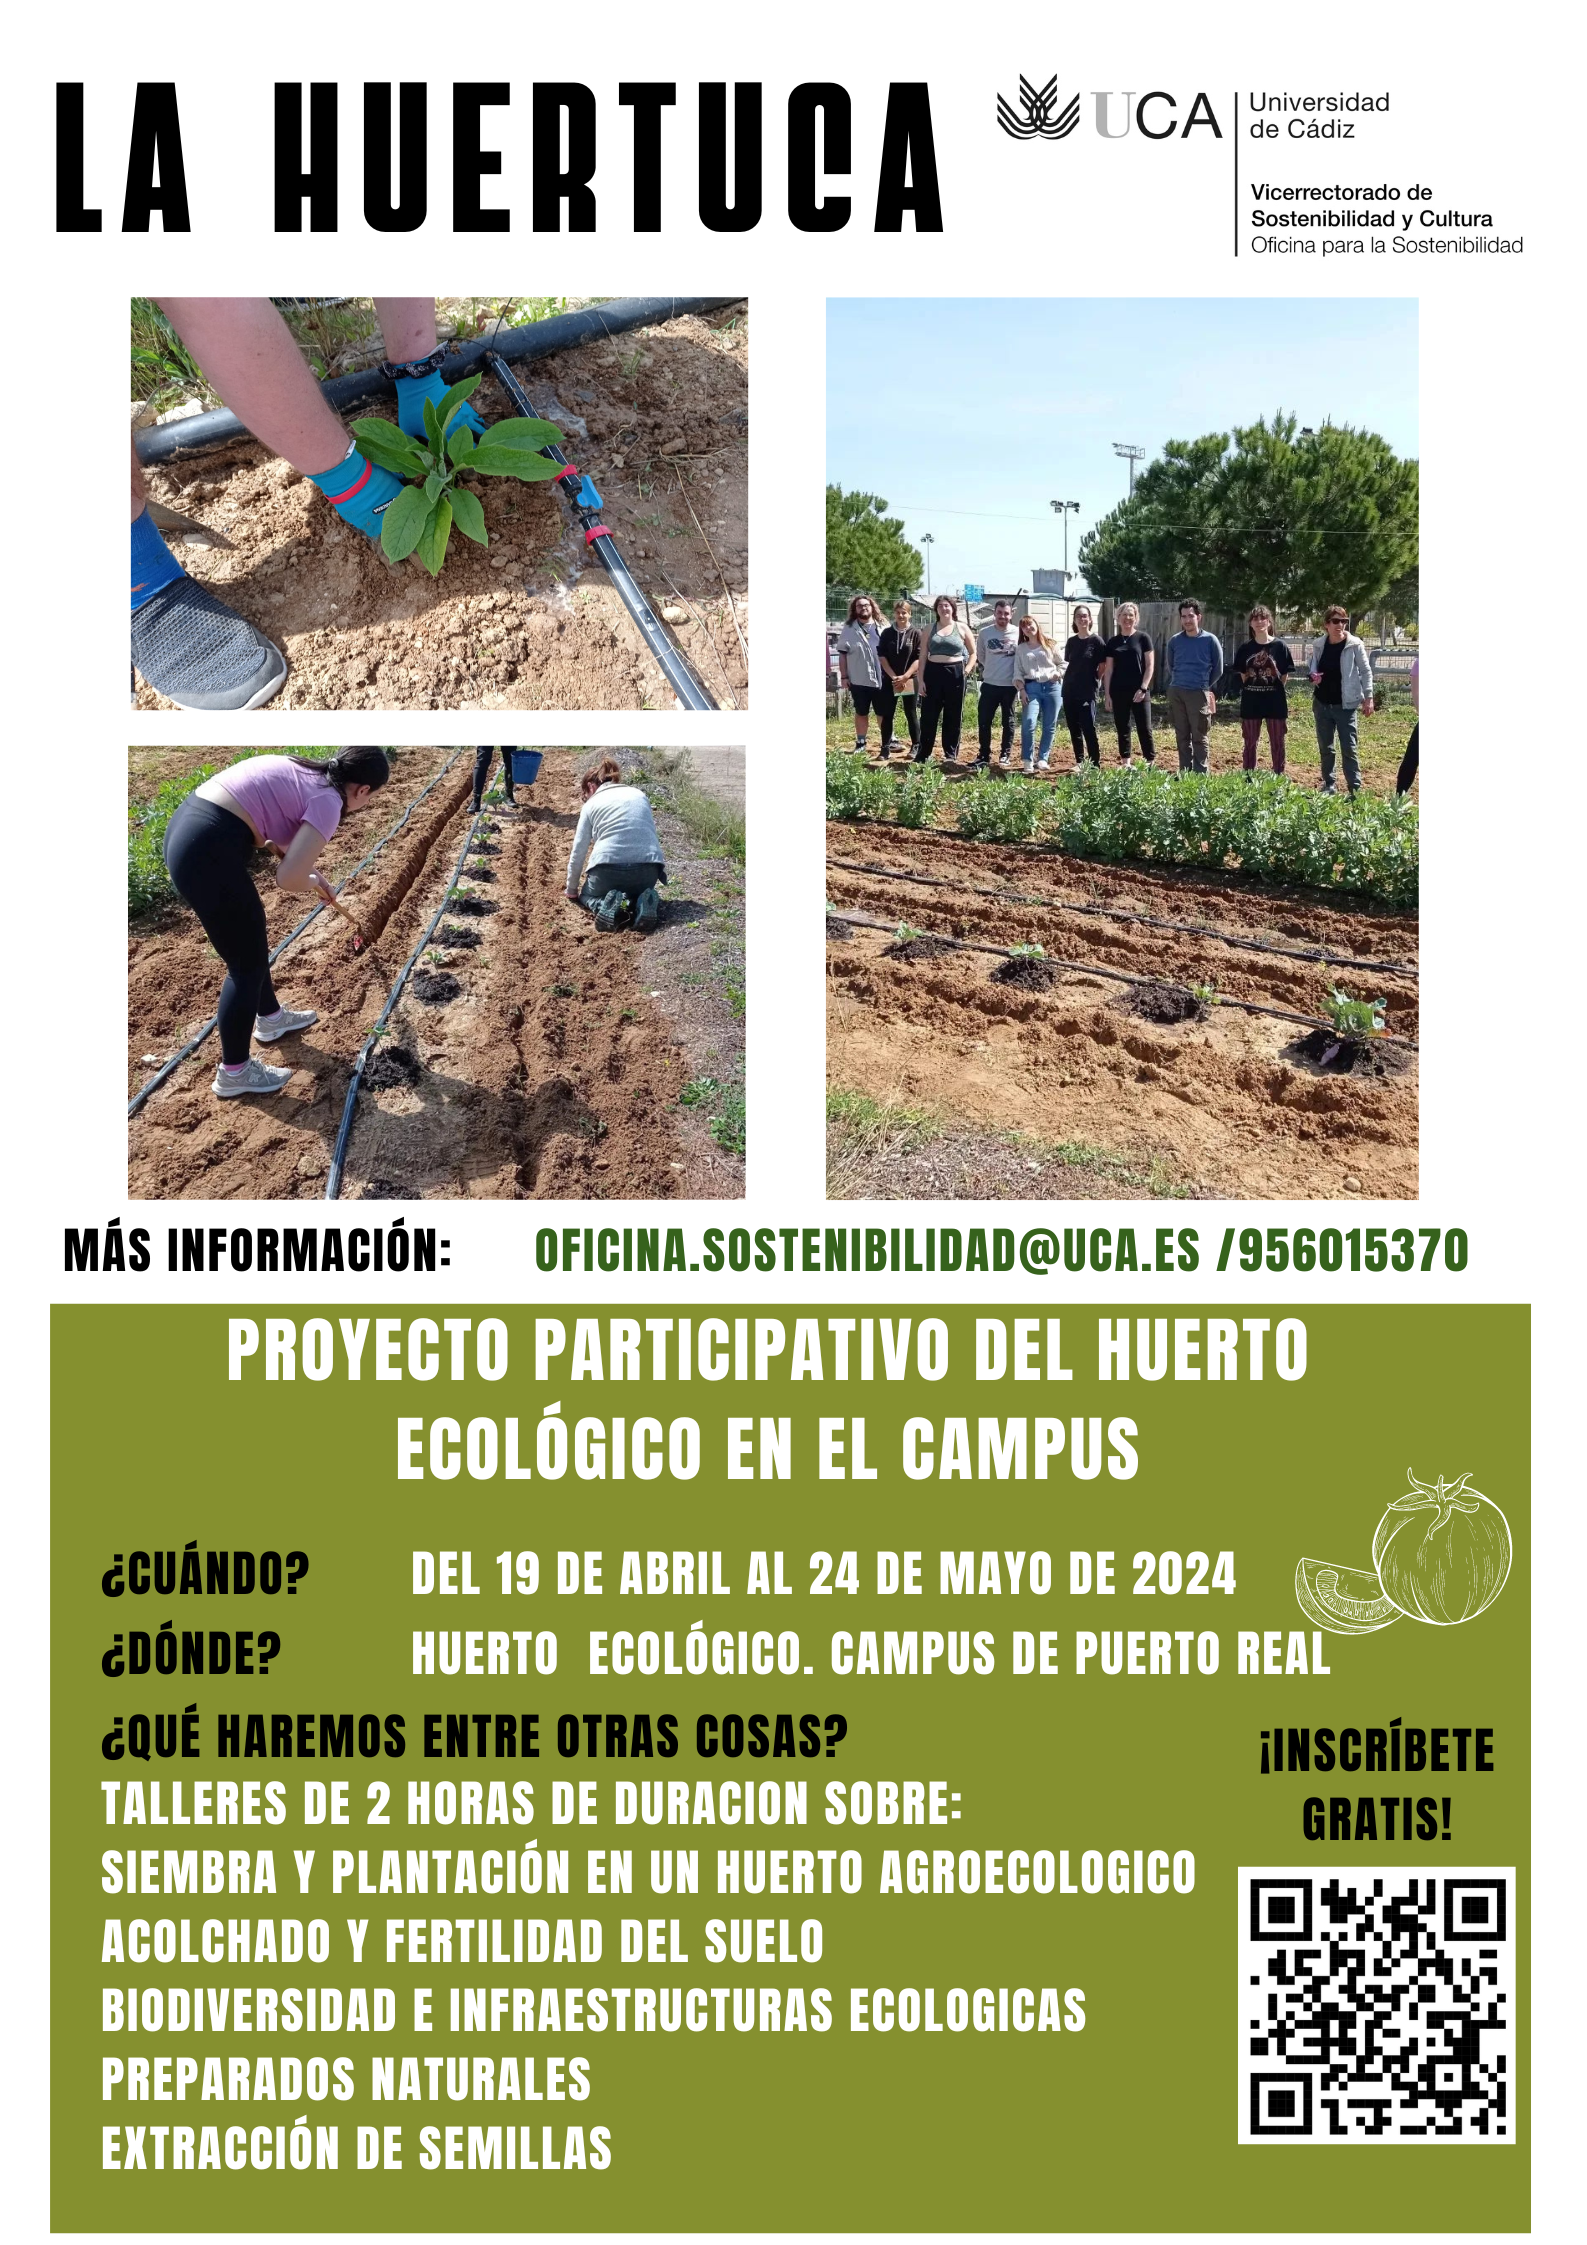 ¡Iniciamos una nueva edición del Proyecto Participativo en el Huerto Ecológico del campus de Puerto Real!